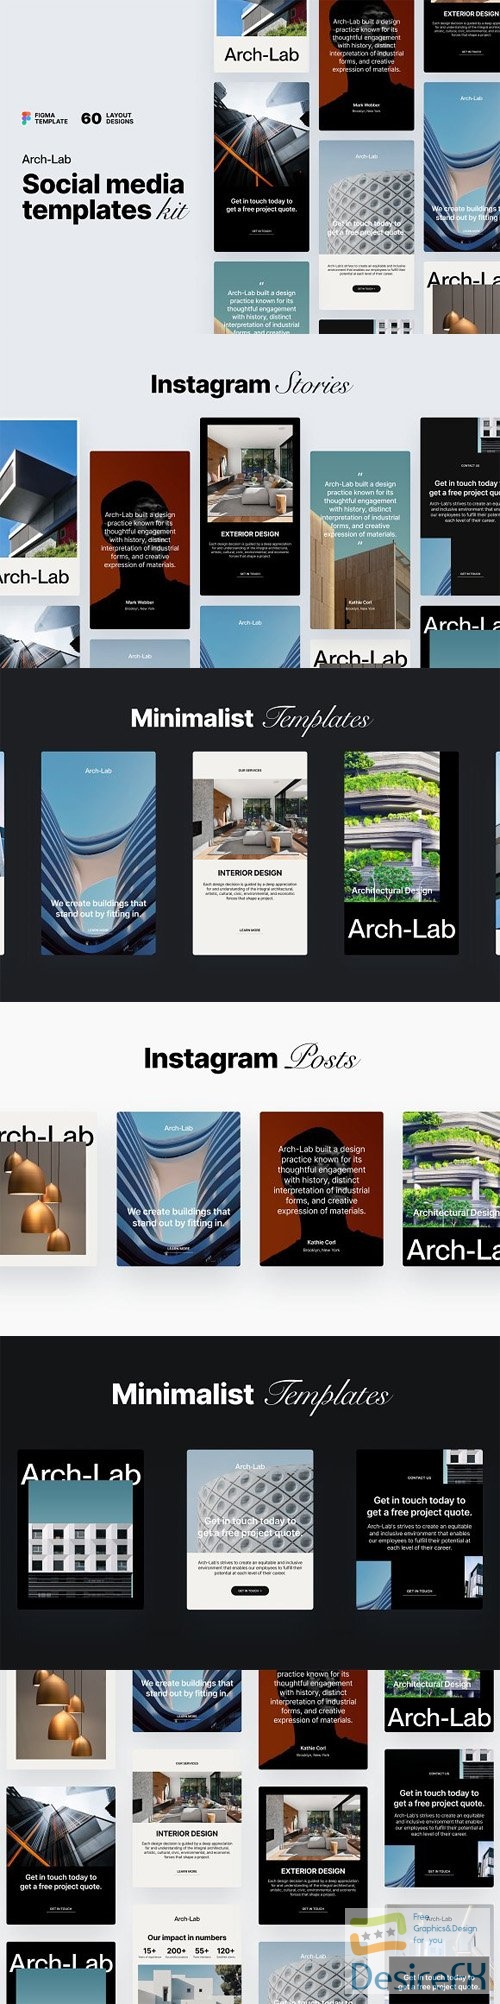 Arch-Lab Social Media Templates Kit v1.1 for Figma